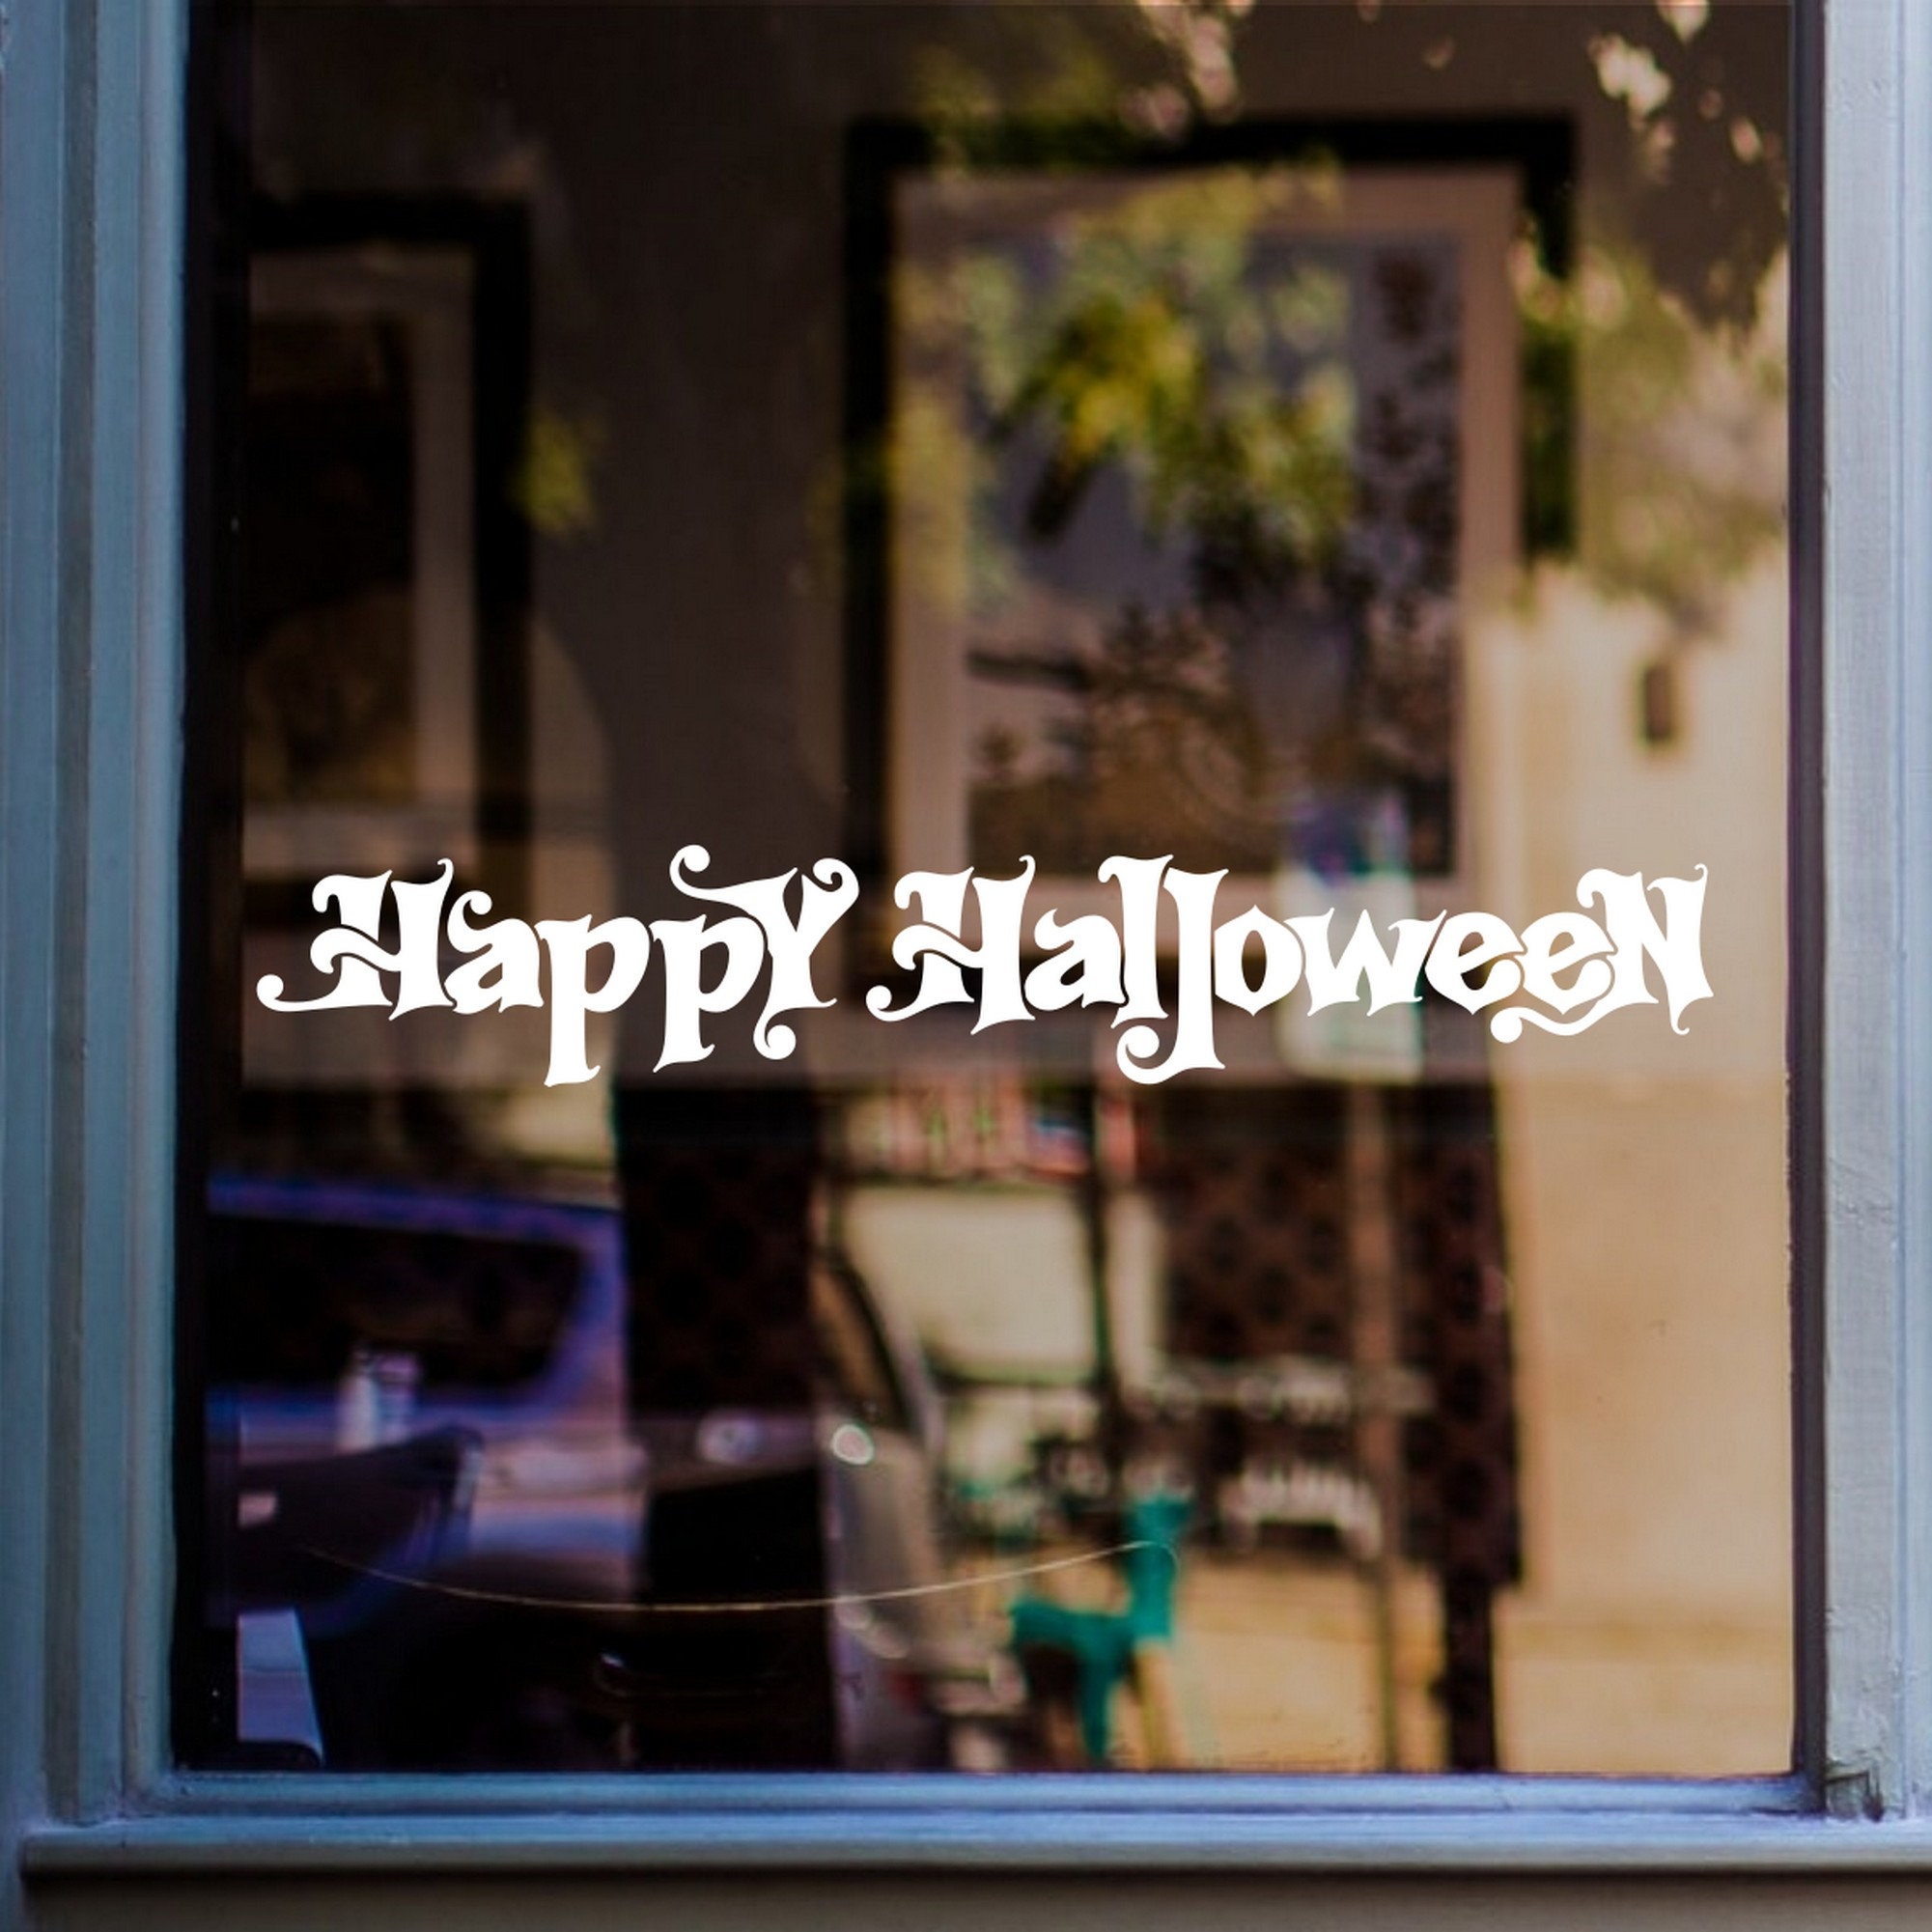 Happy Halloween Shop doors windows stickers decoration display decal 